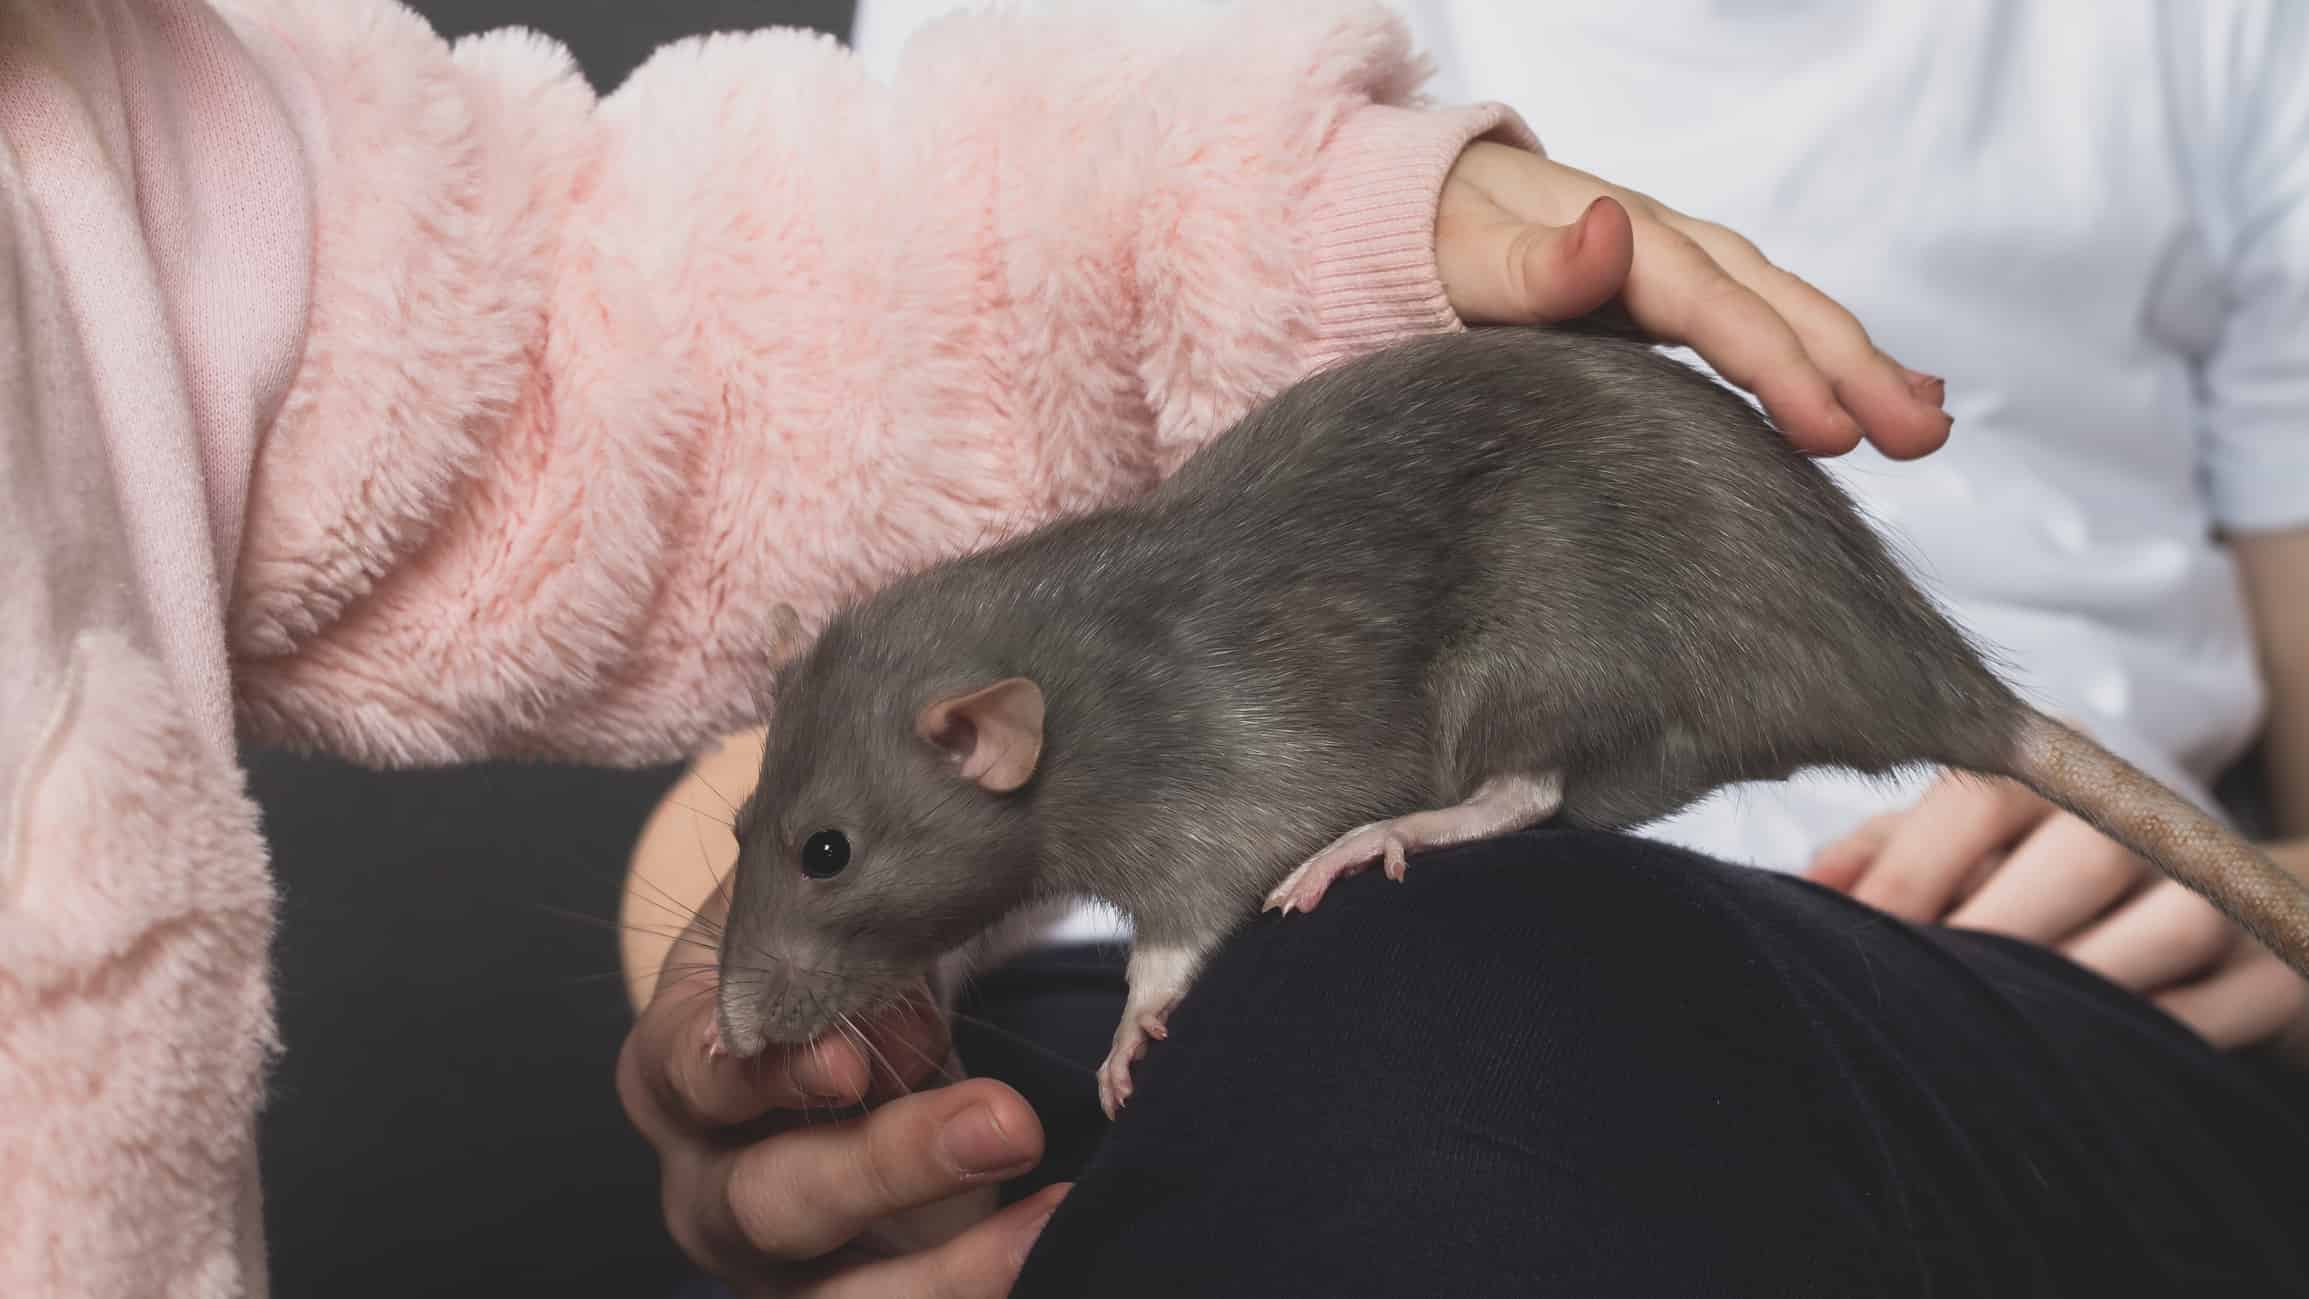 Pet rat being pet by children